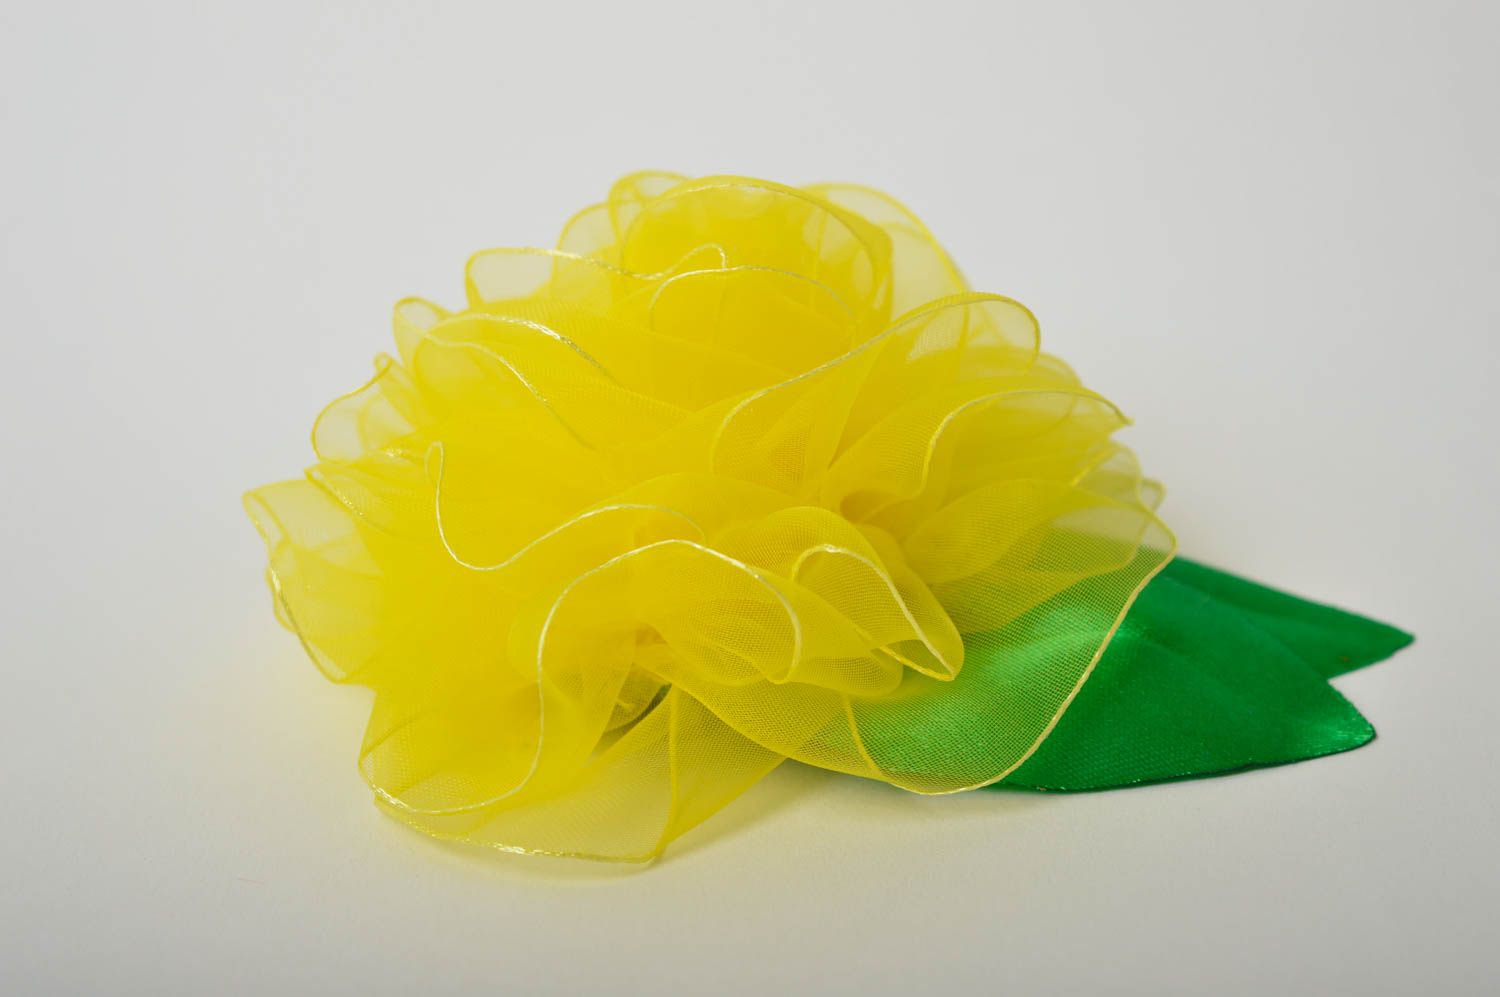 Брошь ручной работы брошь из атласа брошь в виде цветка яркая желтая с зеленым фото 2